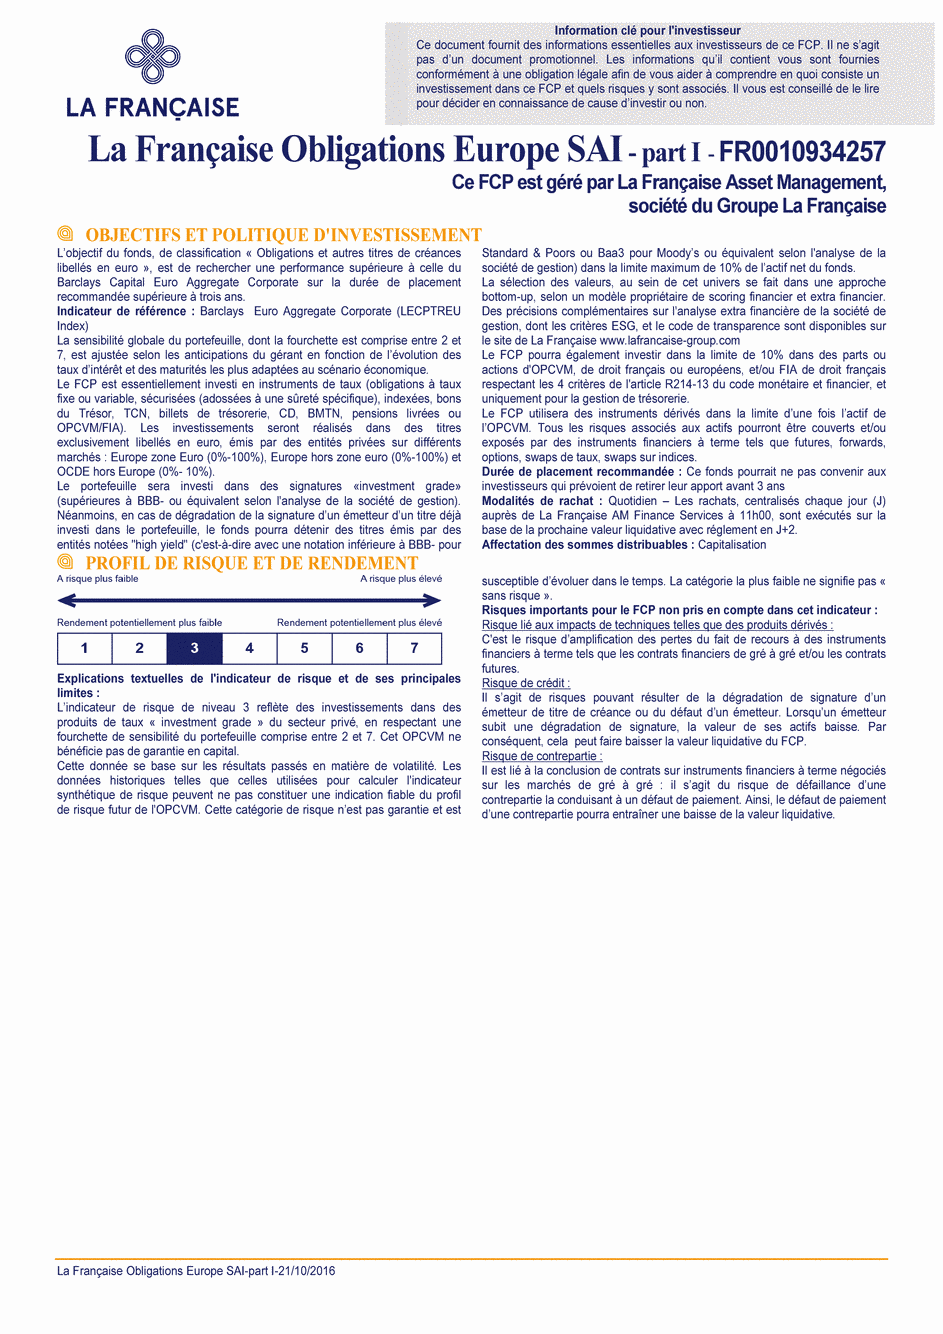 DICI La Française Obligations Europe SAI - Part I - 21/10/2016 - Français